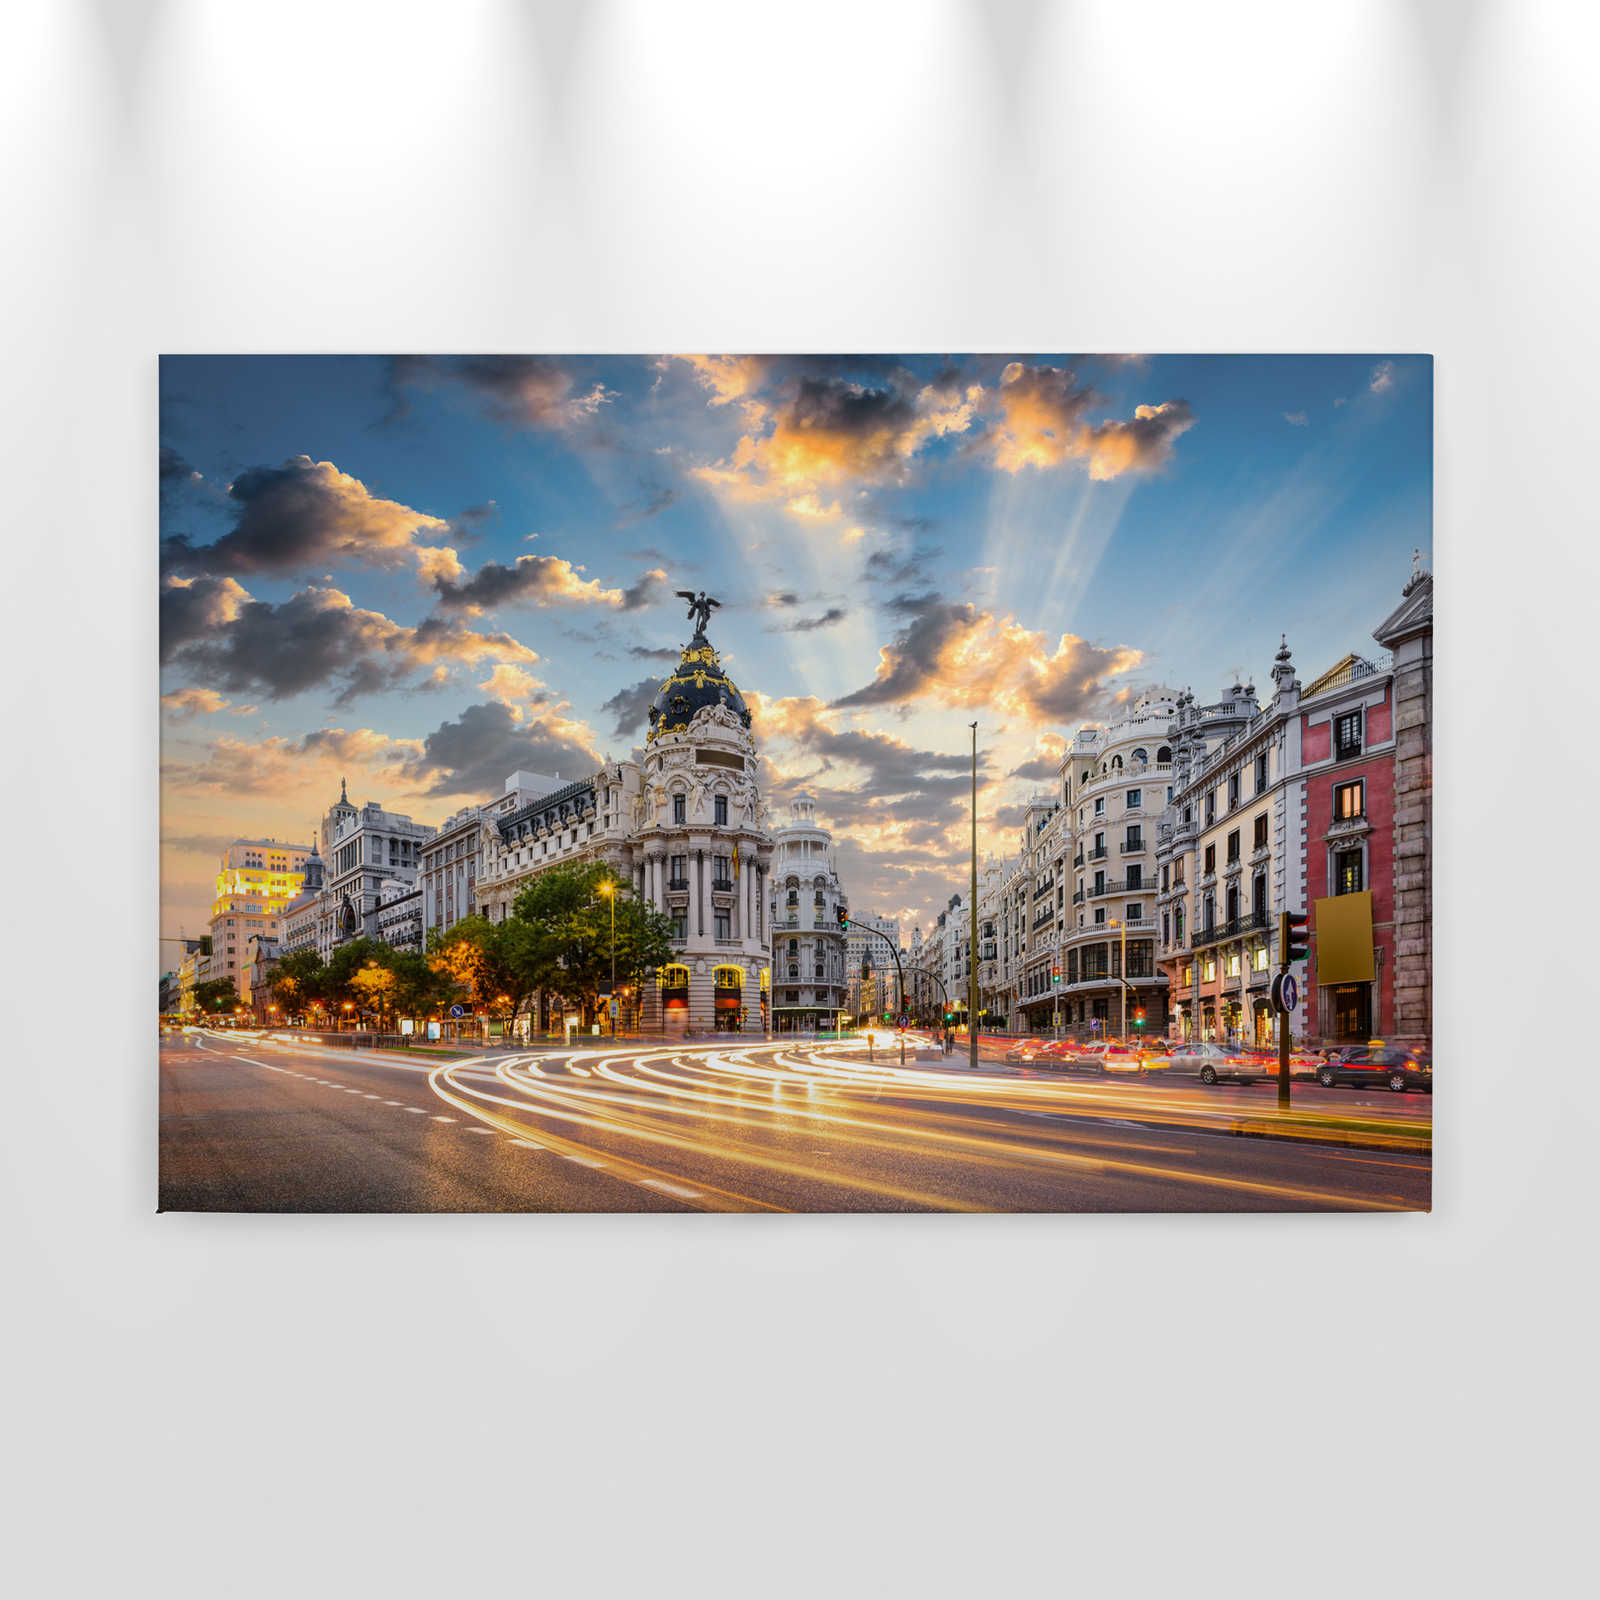             Leinwand mit Madrids Straßen am Morgen – 0,90 m x 0,60 m
        